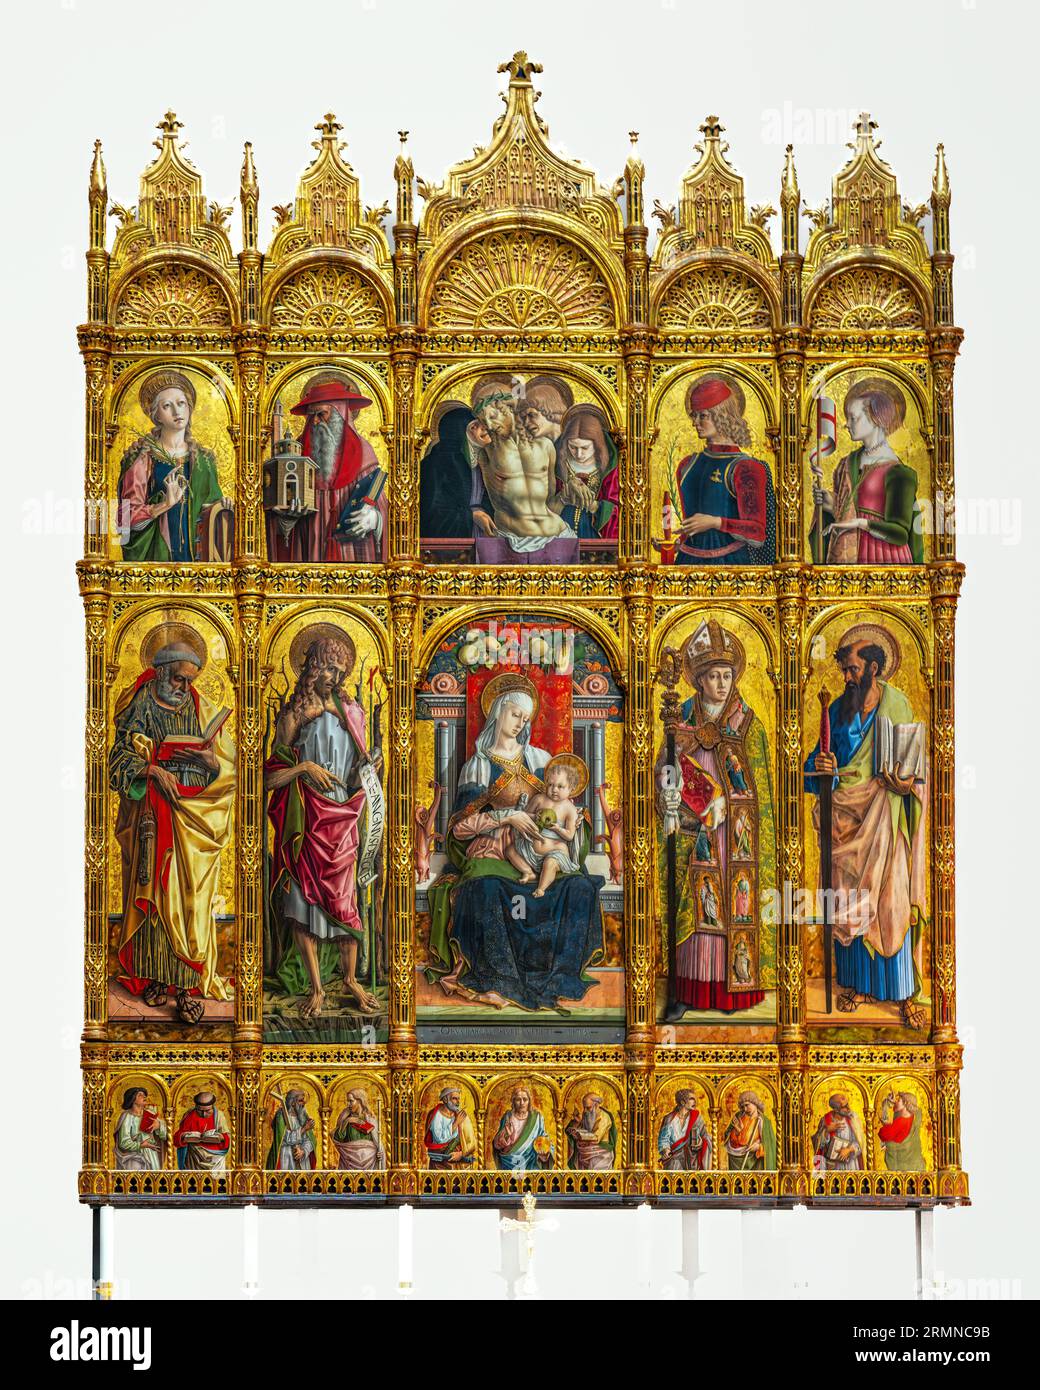 Le polyptyque de Sant'Emidio de Carlo Crivelli, panneaux placés dans un cadre gothique sculpté. Cathédrale de Sant'Emidio. Ascoli Piceno Marche Italie Banque D'Images